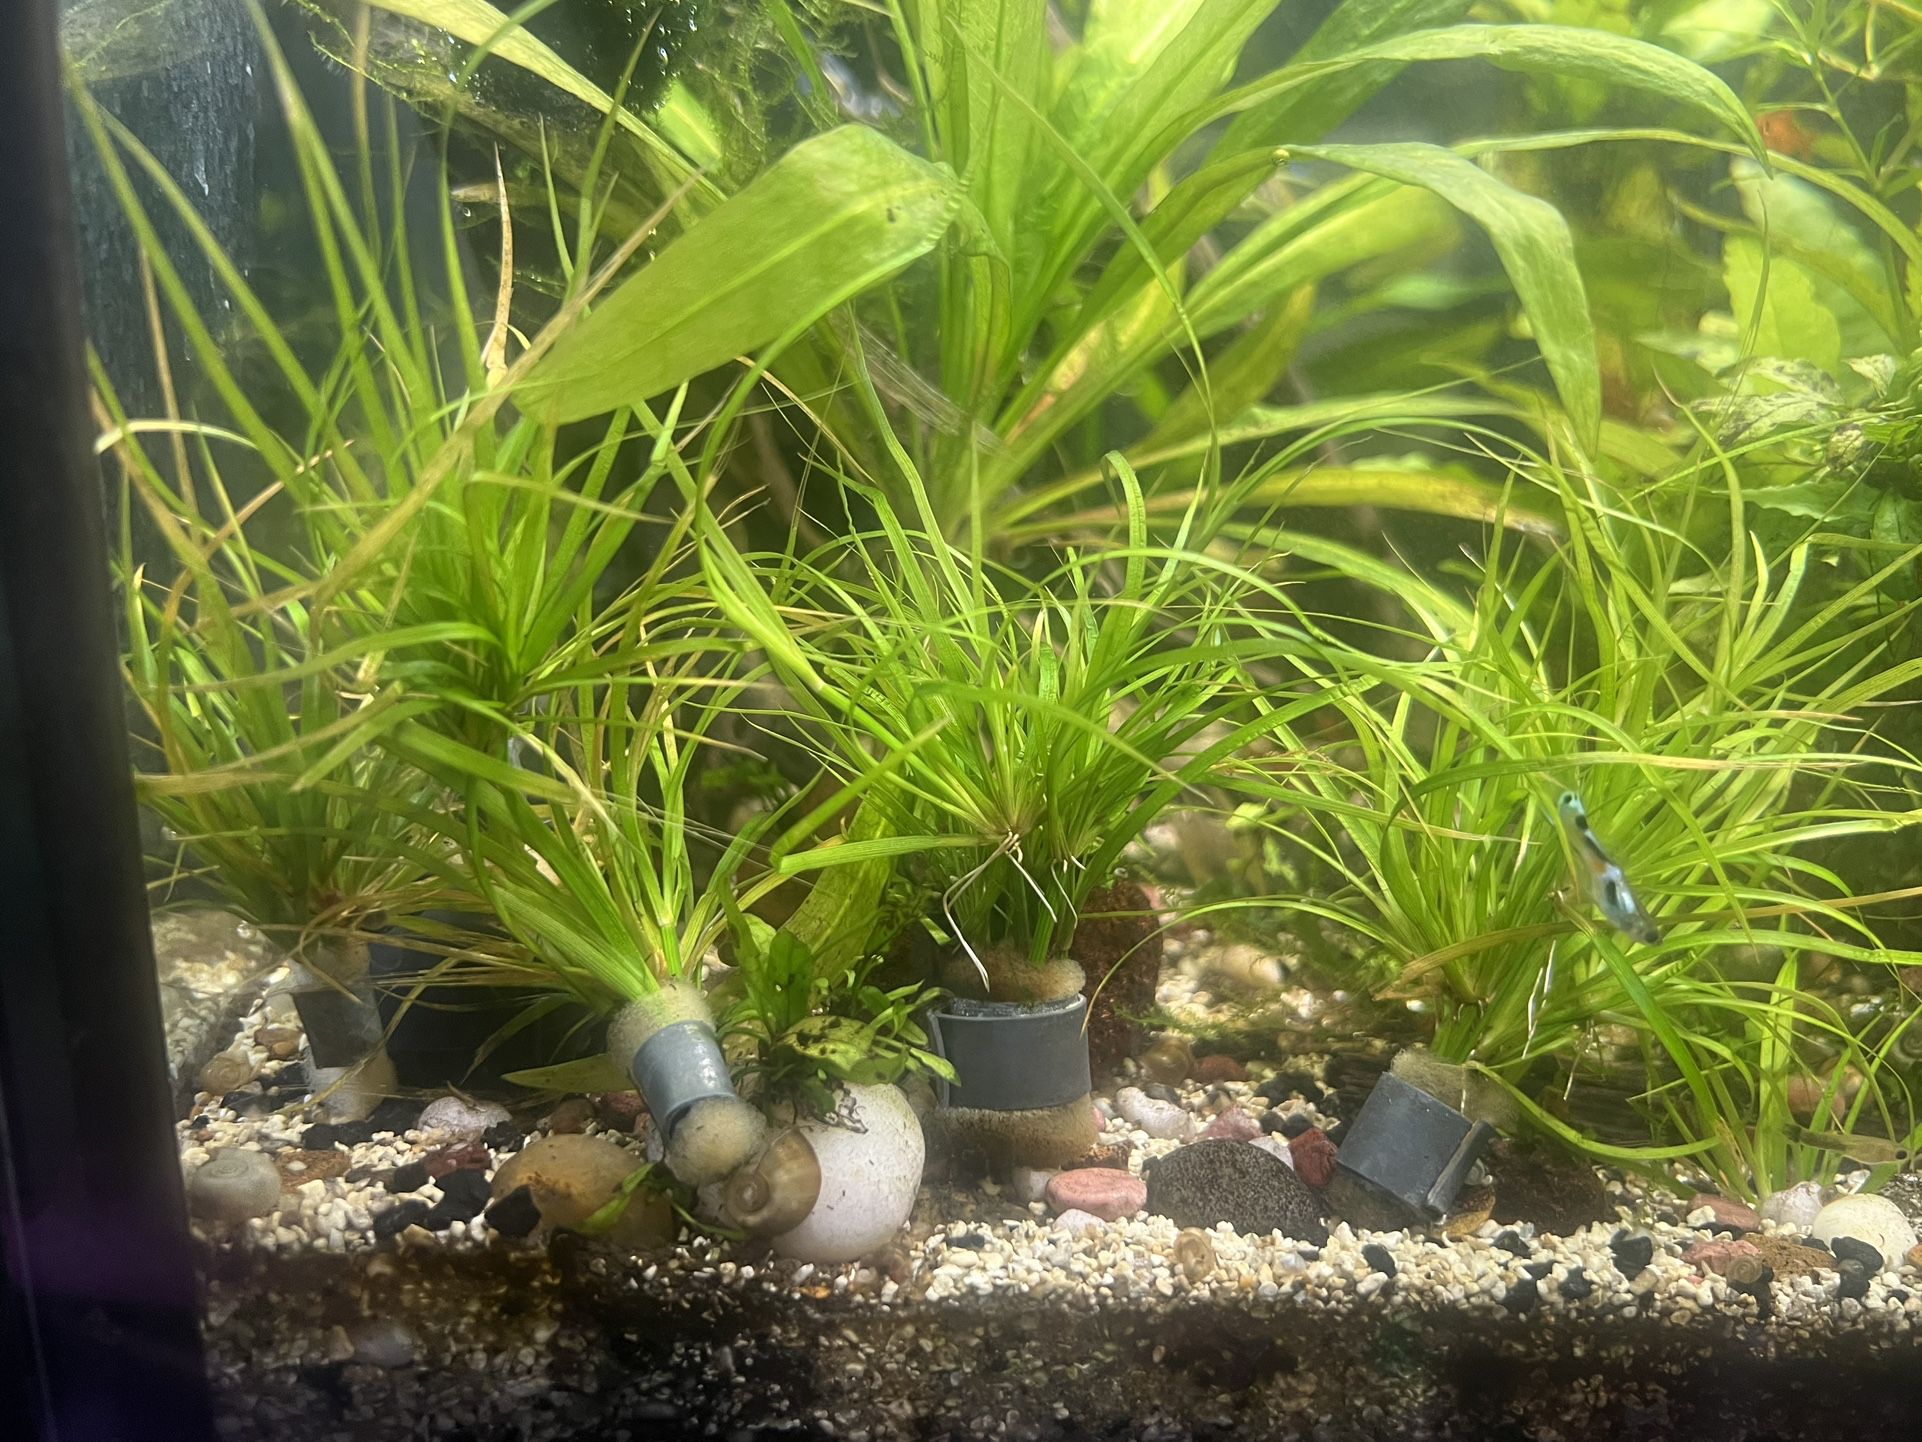 Aquatic Plants For Fish Tanks And Aquariums 